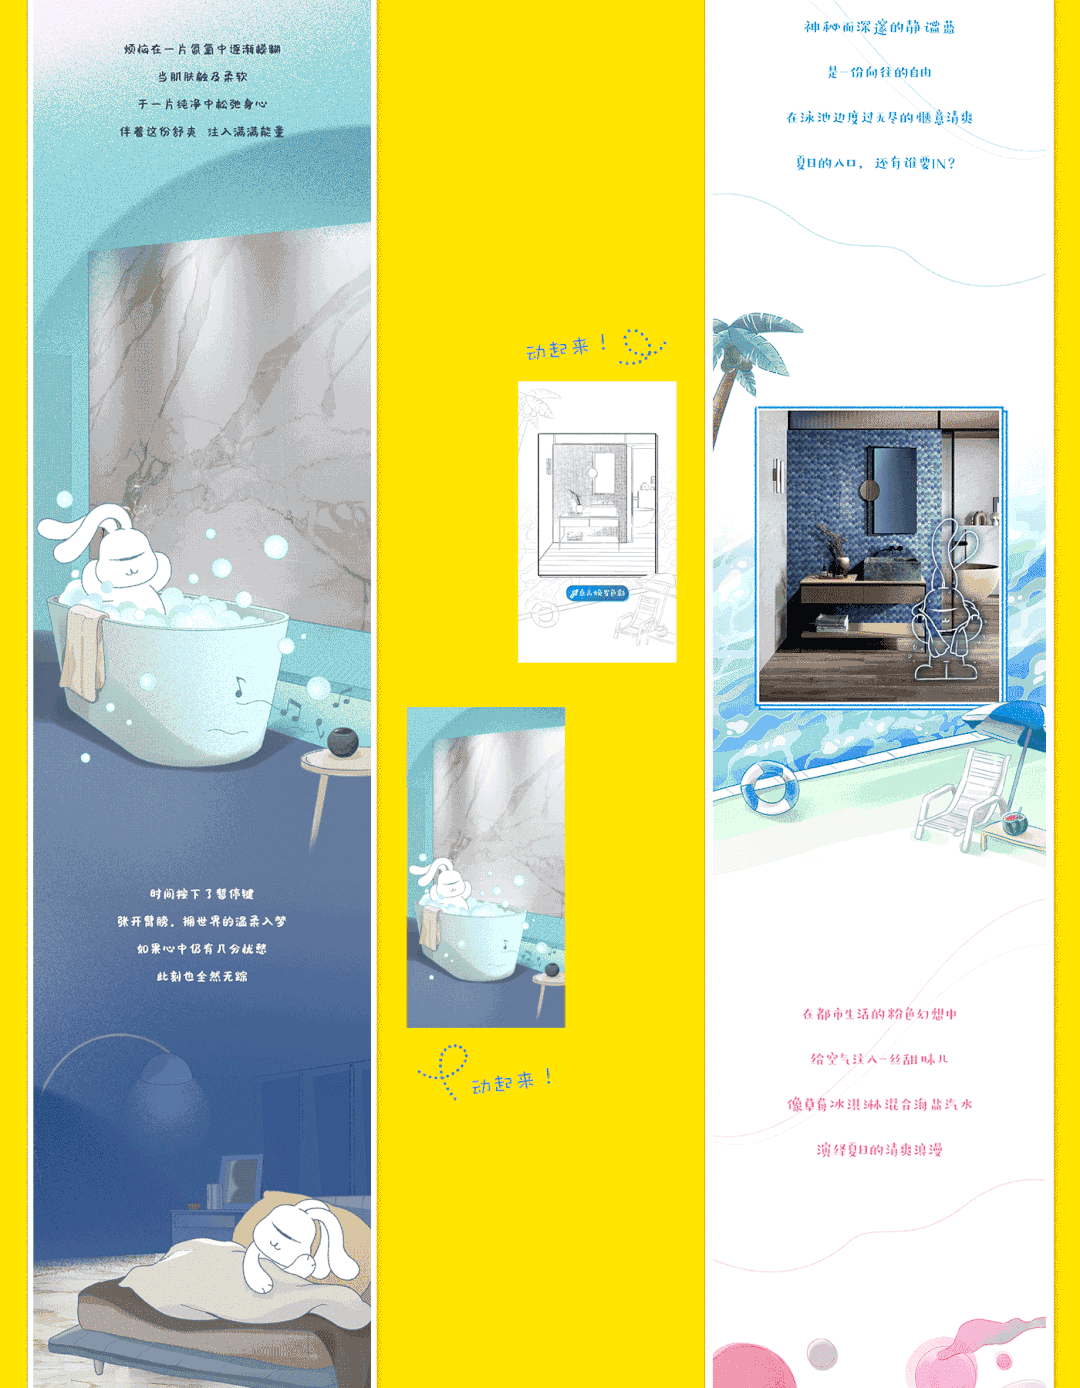 【插画设计】‘白兔瓷砖’商业插画之长图/节气和节日营销海报图2